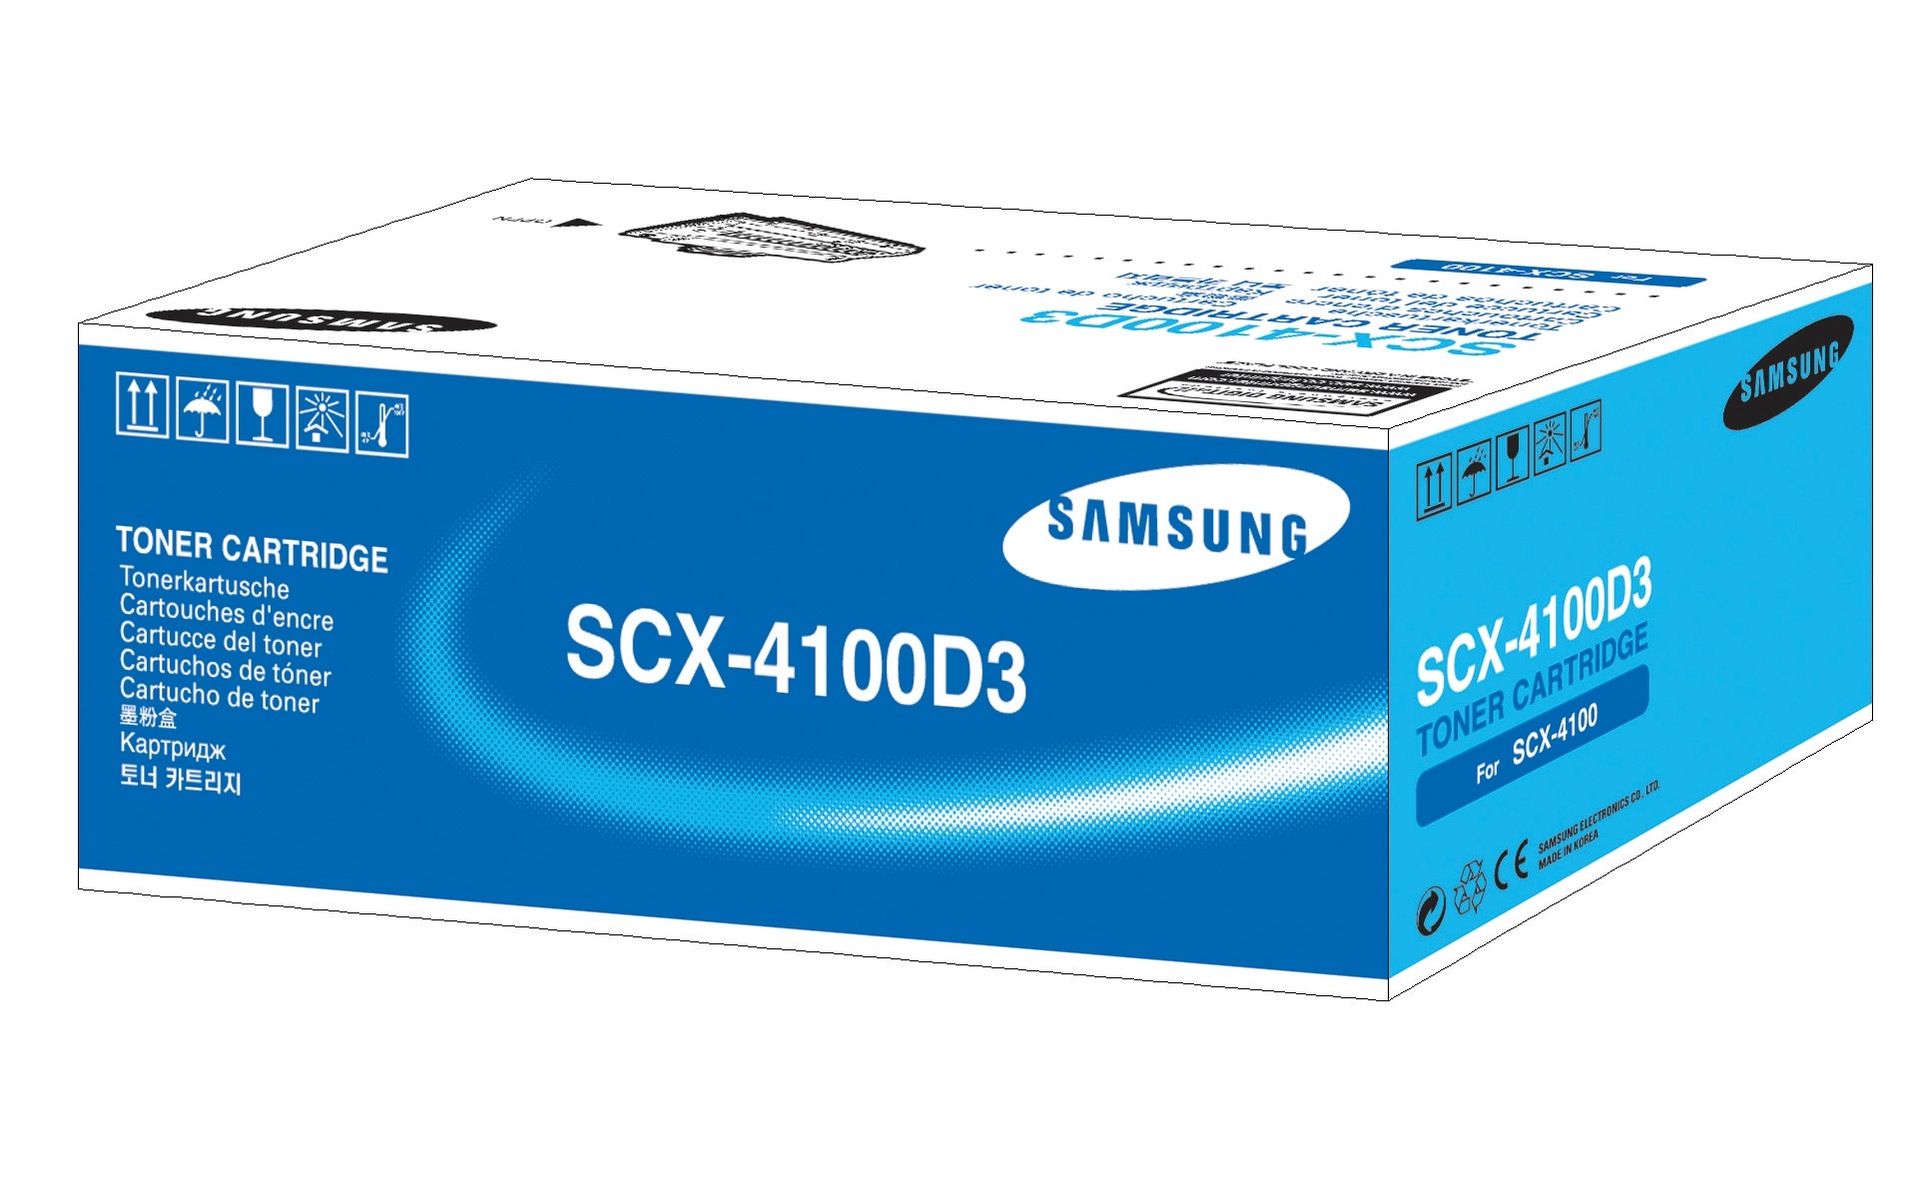 Samsung scx 4100 series